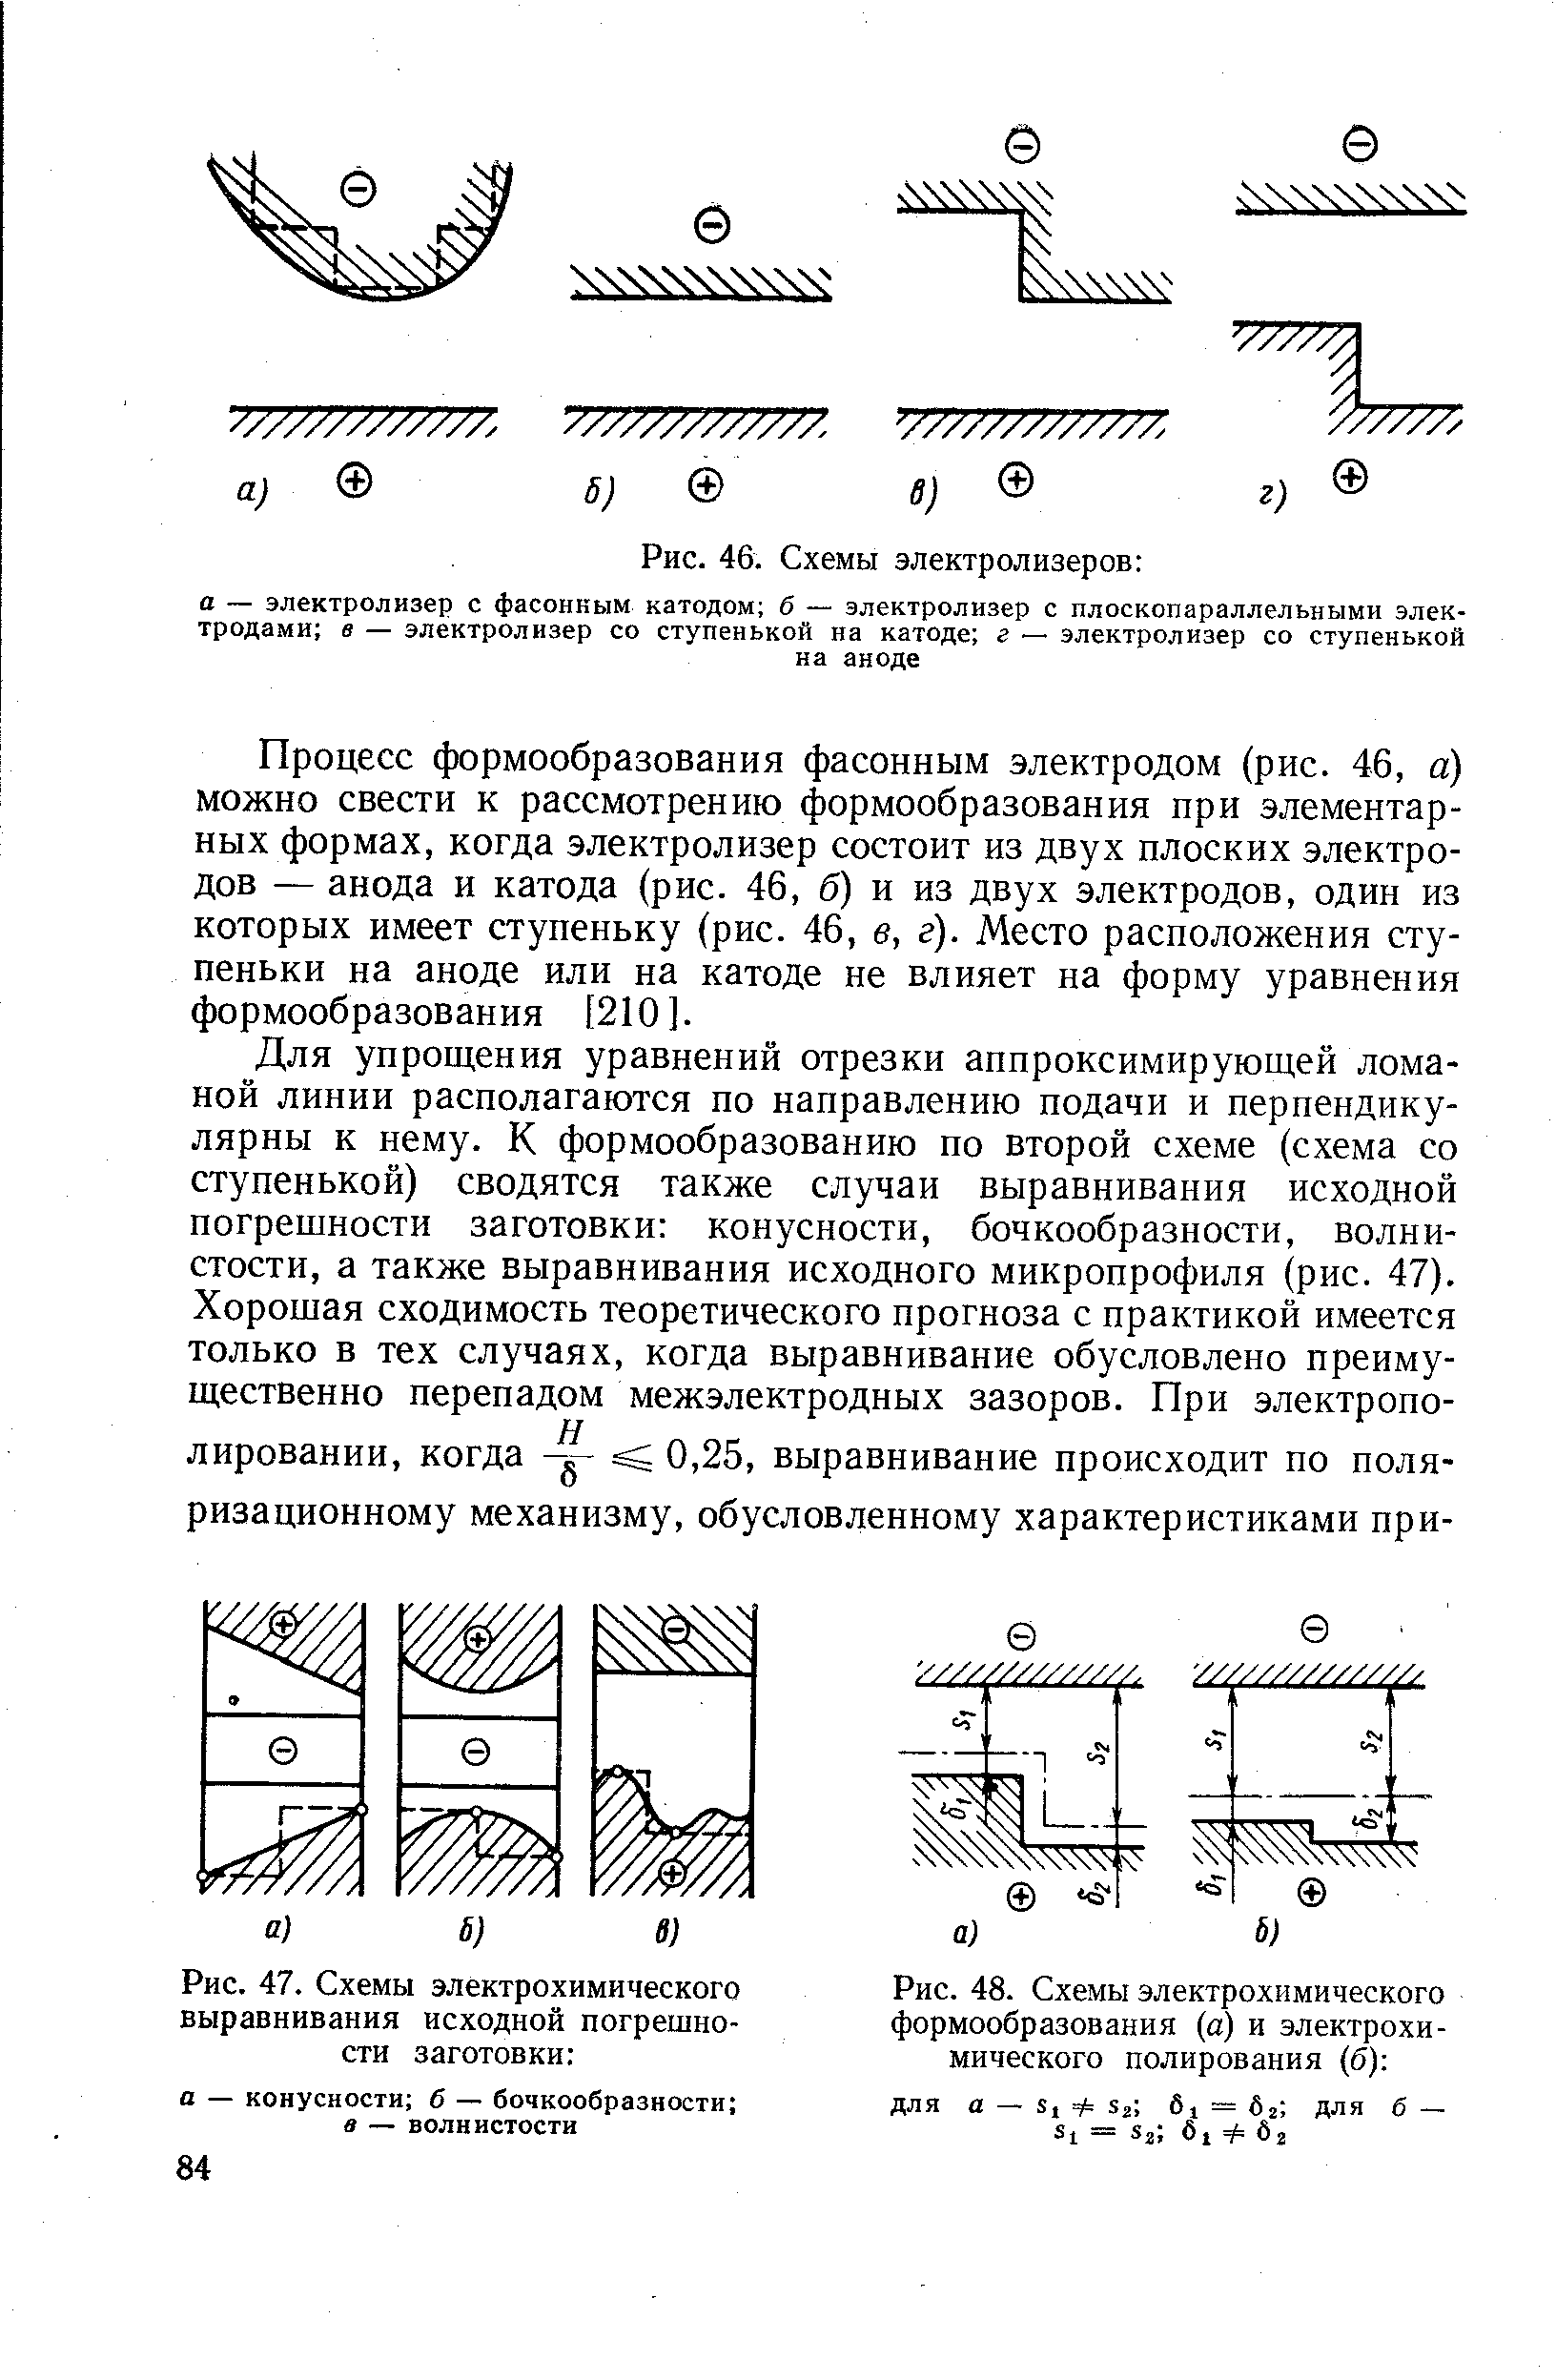 Рис. 48. Схемы электрохимического формообразования (а) и электрохимического полирования (б) 
